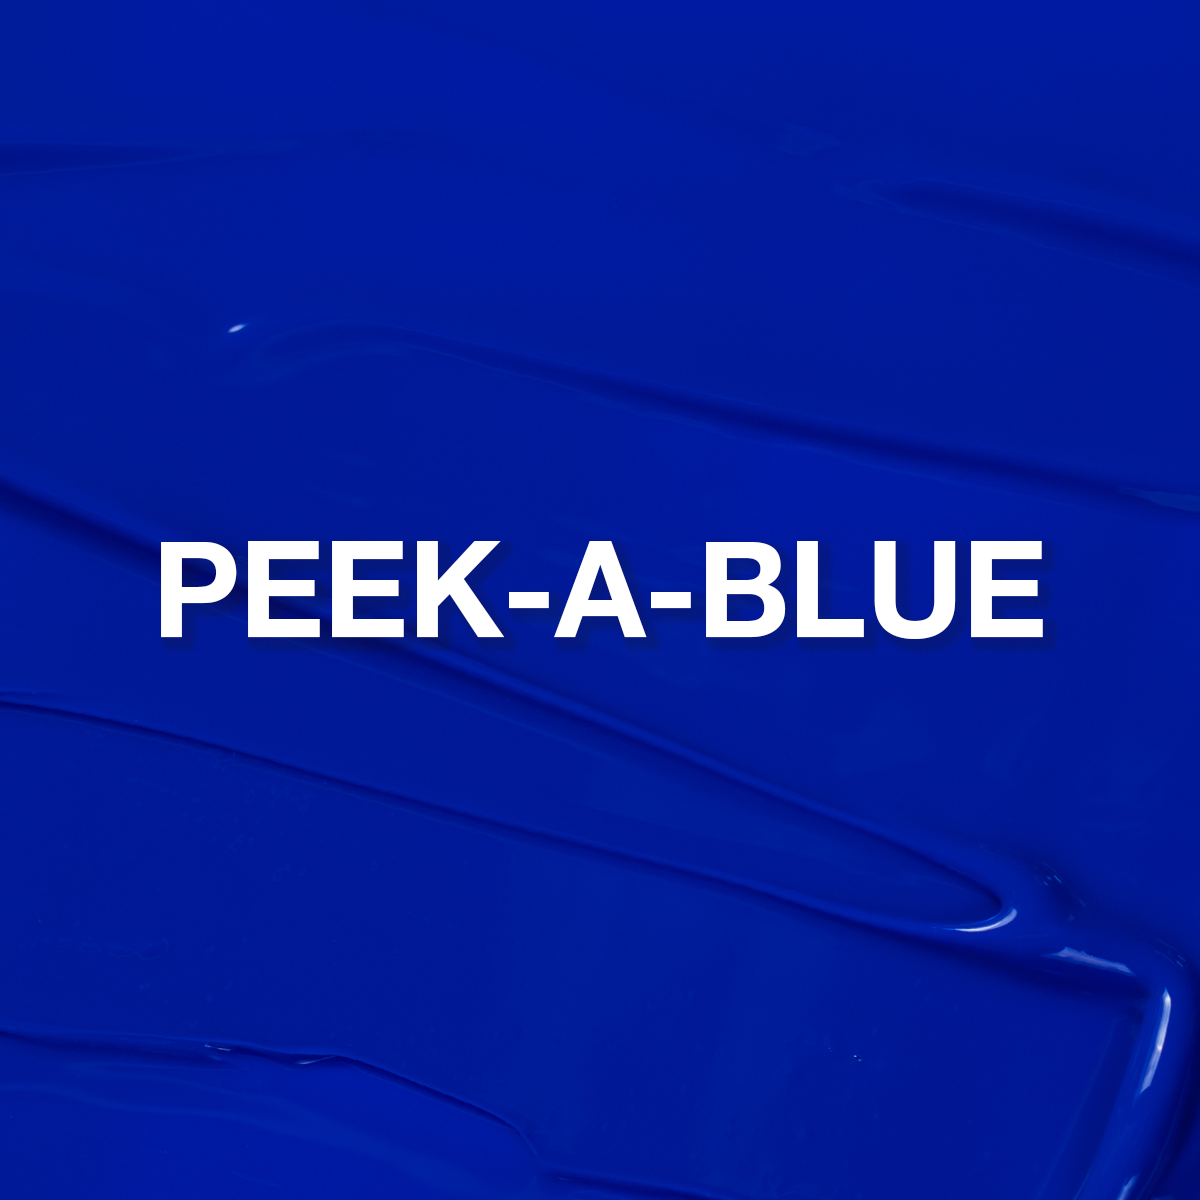 Peek-A-Blue ButterCream